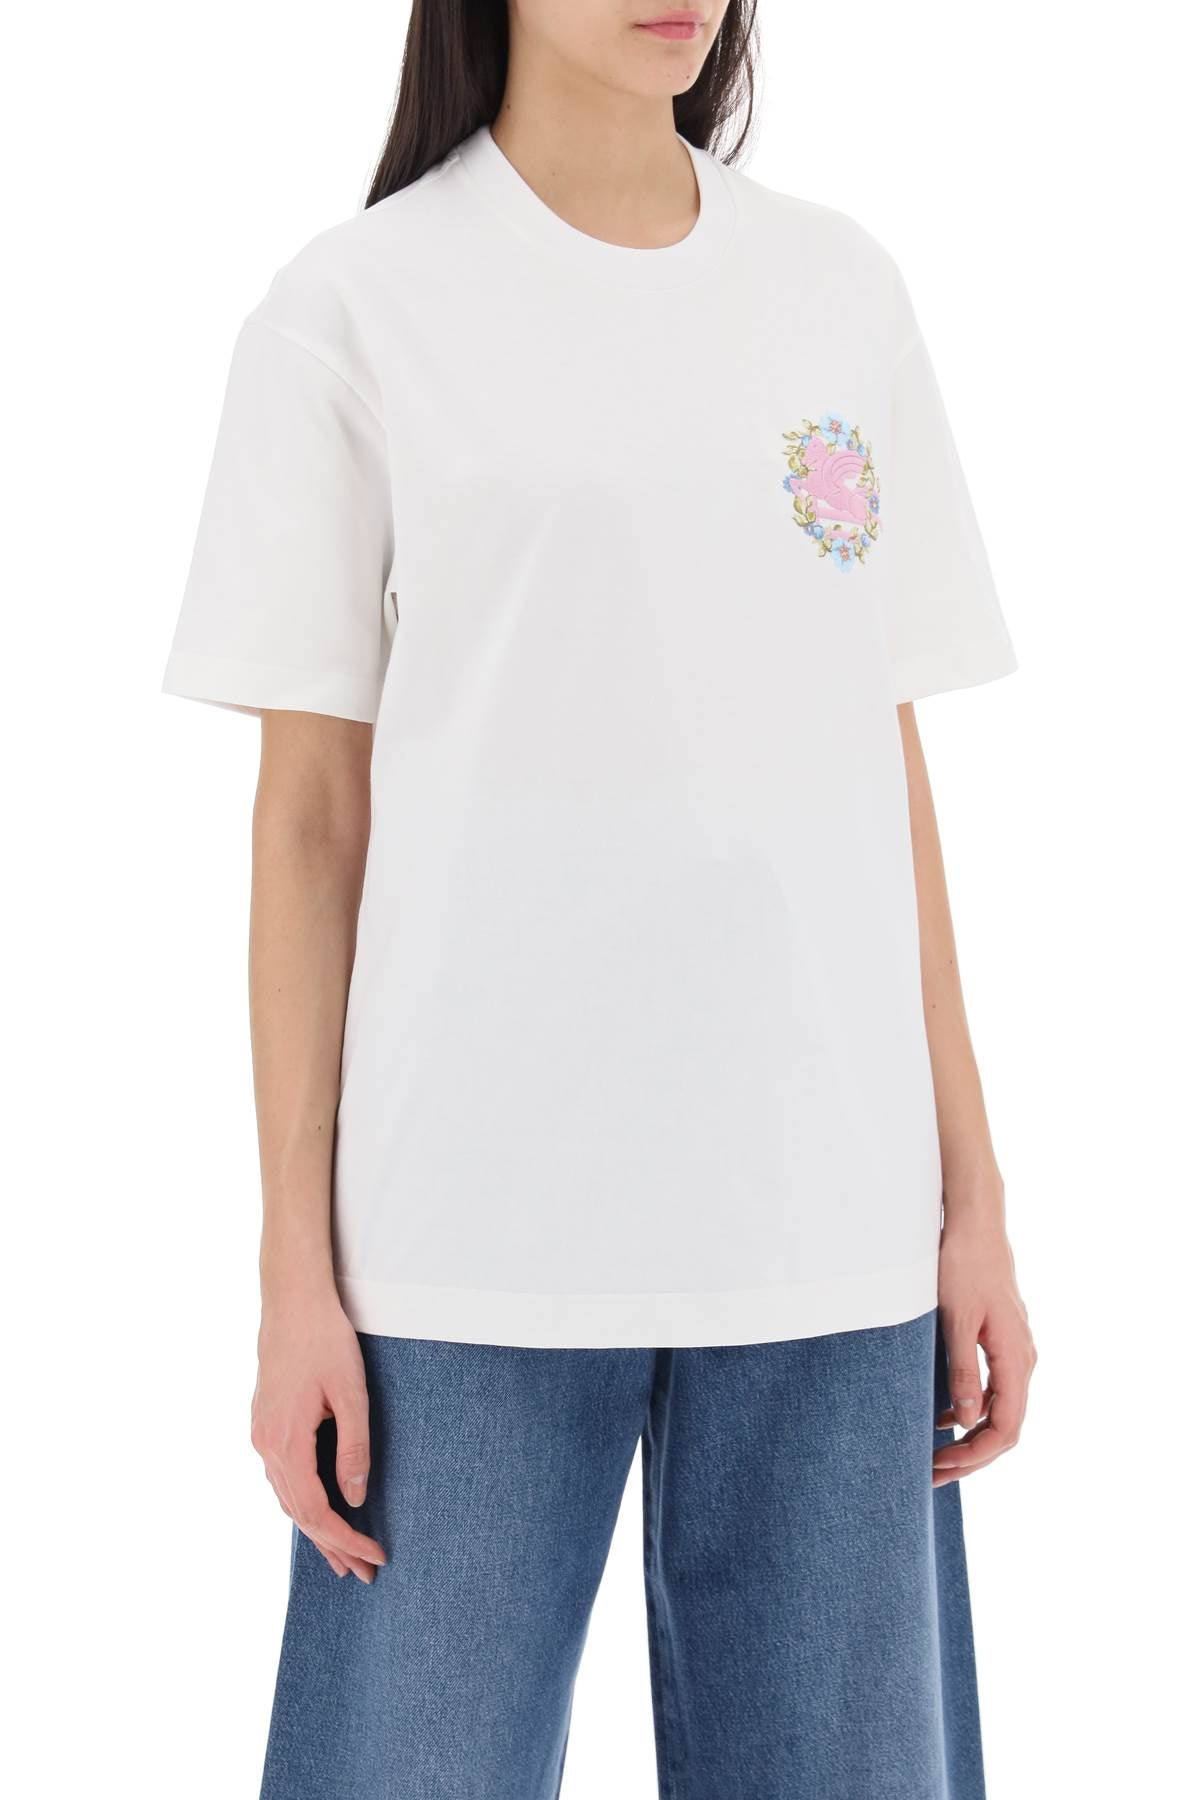 Etro t-shirt con ricamo pegaso floreale-1